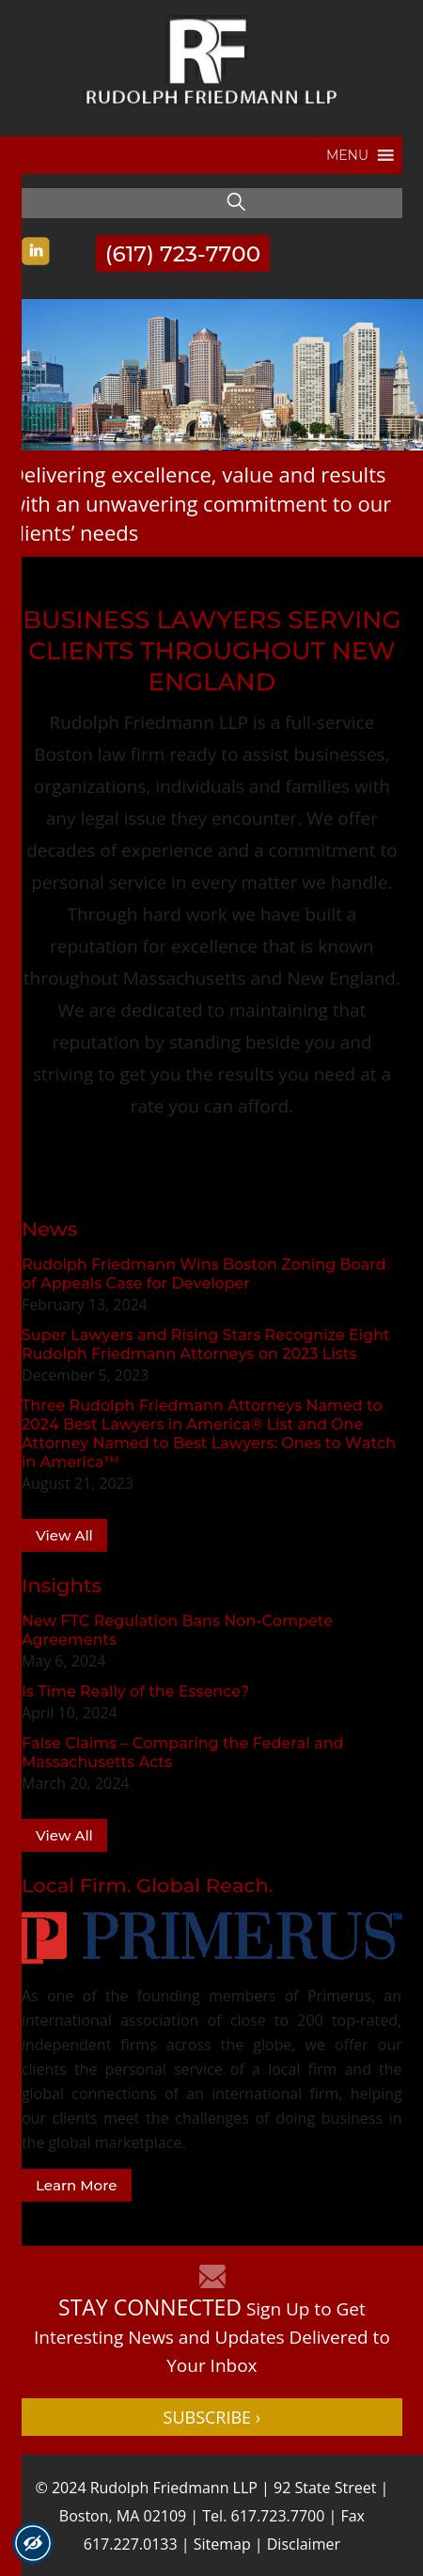 Rudolph Friedmann LLP - Boston MA Lawyers